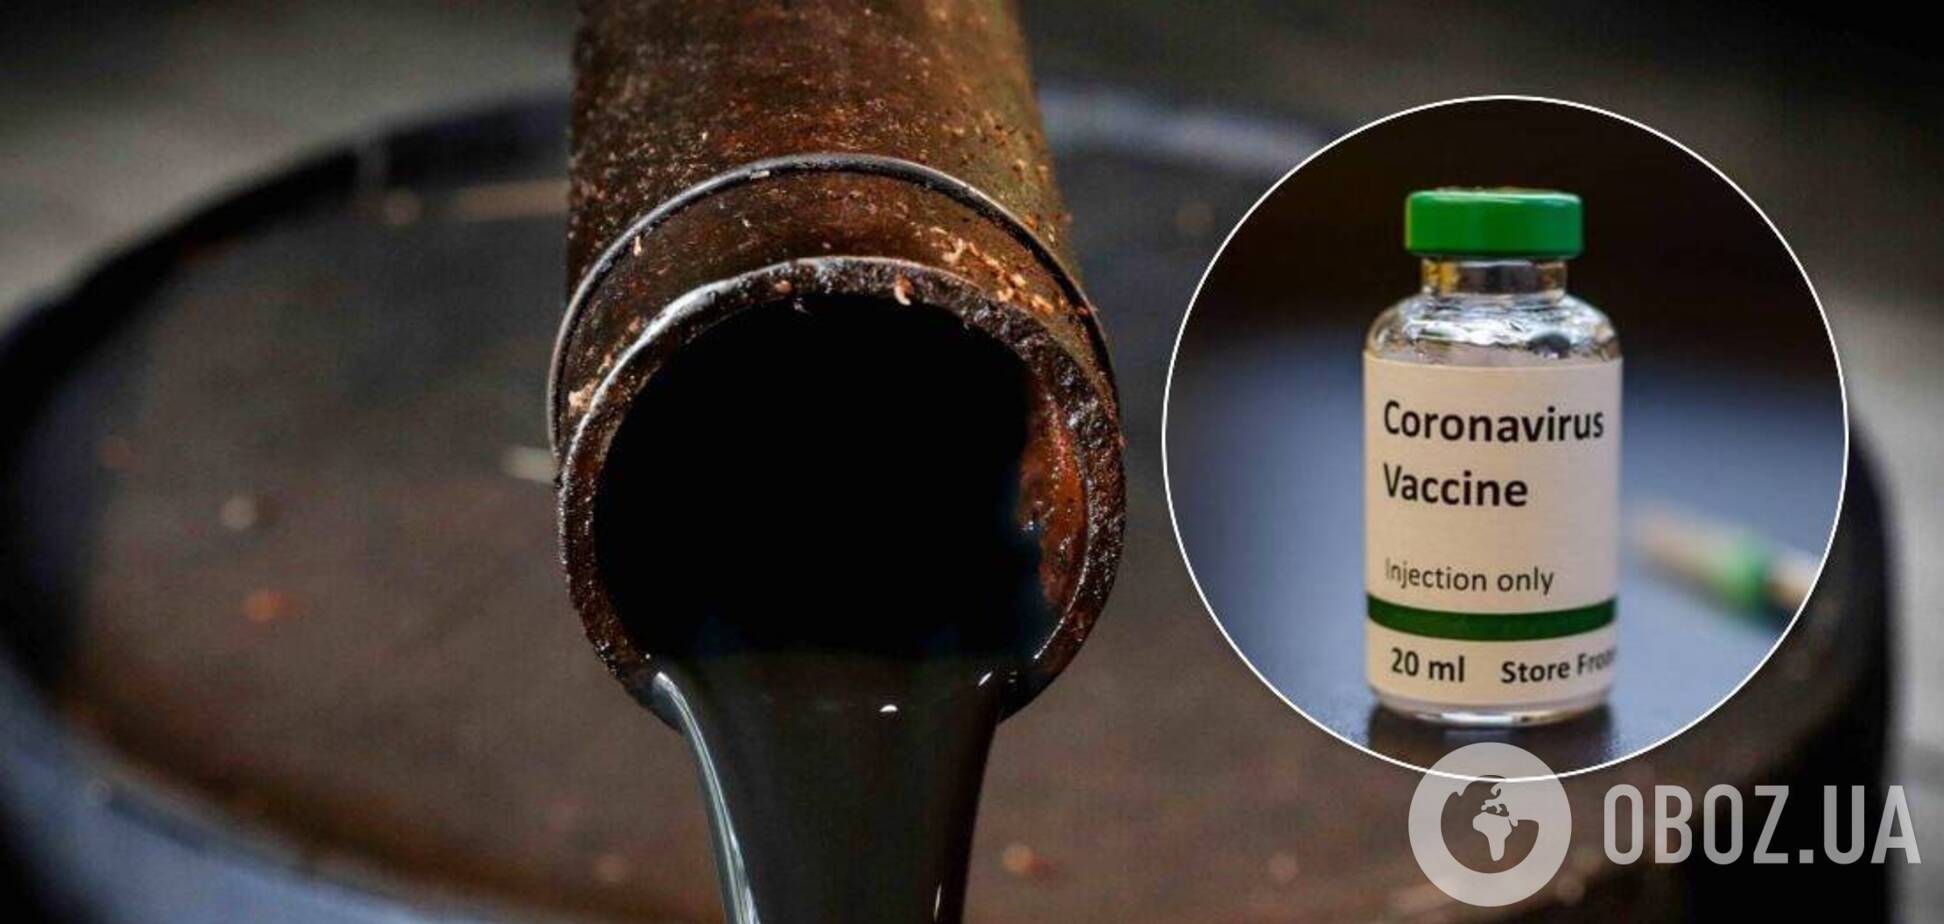 Цены на нефть выросли из-за новостей о вакцине от коронавируса